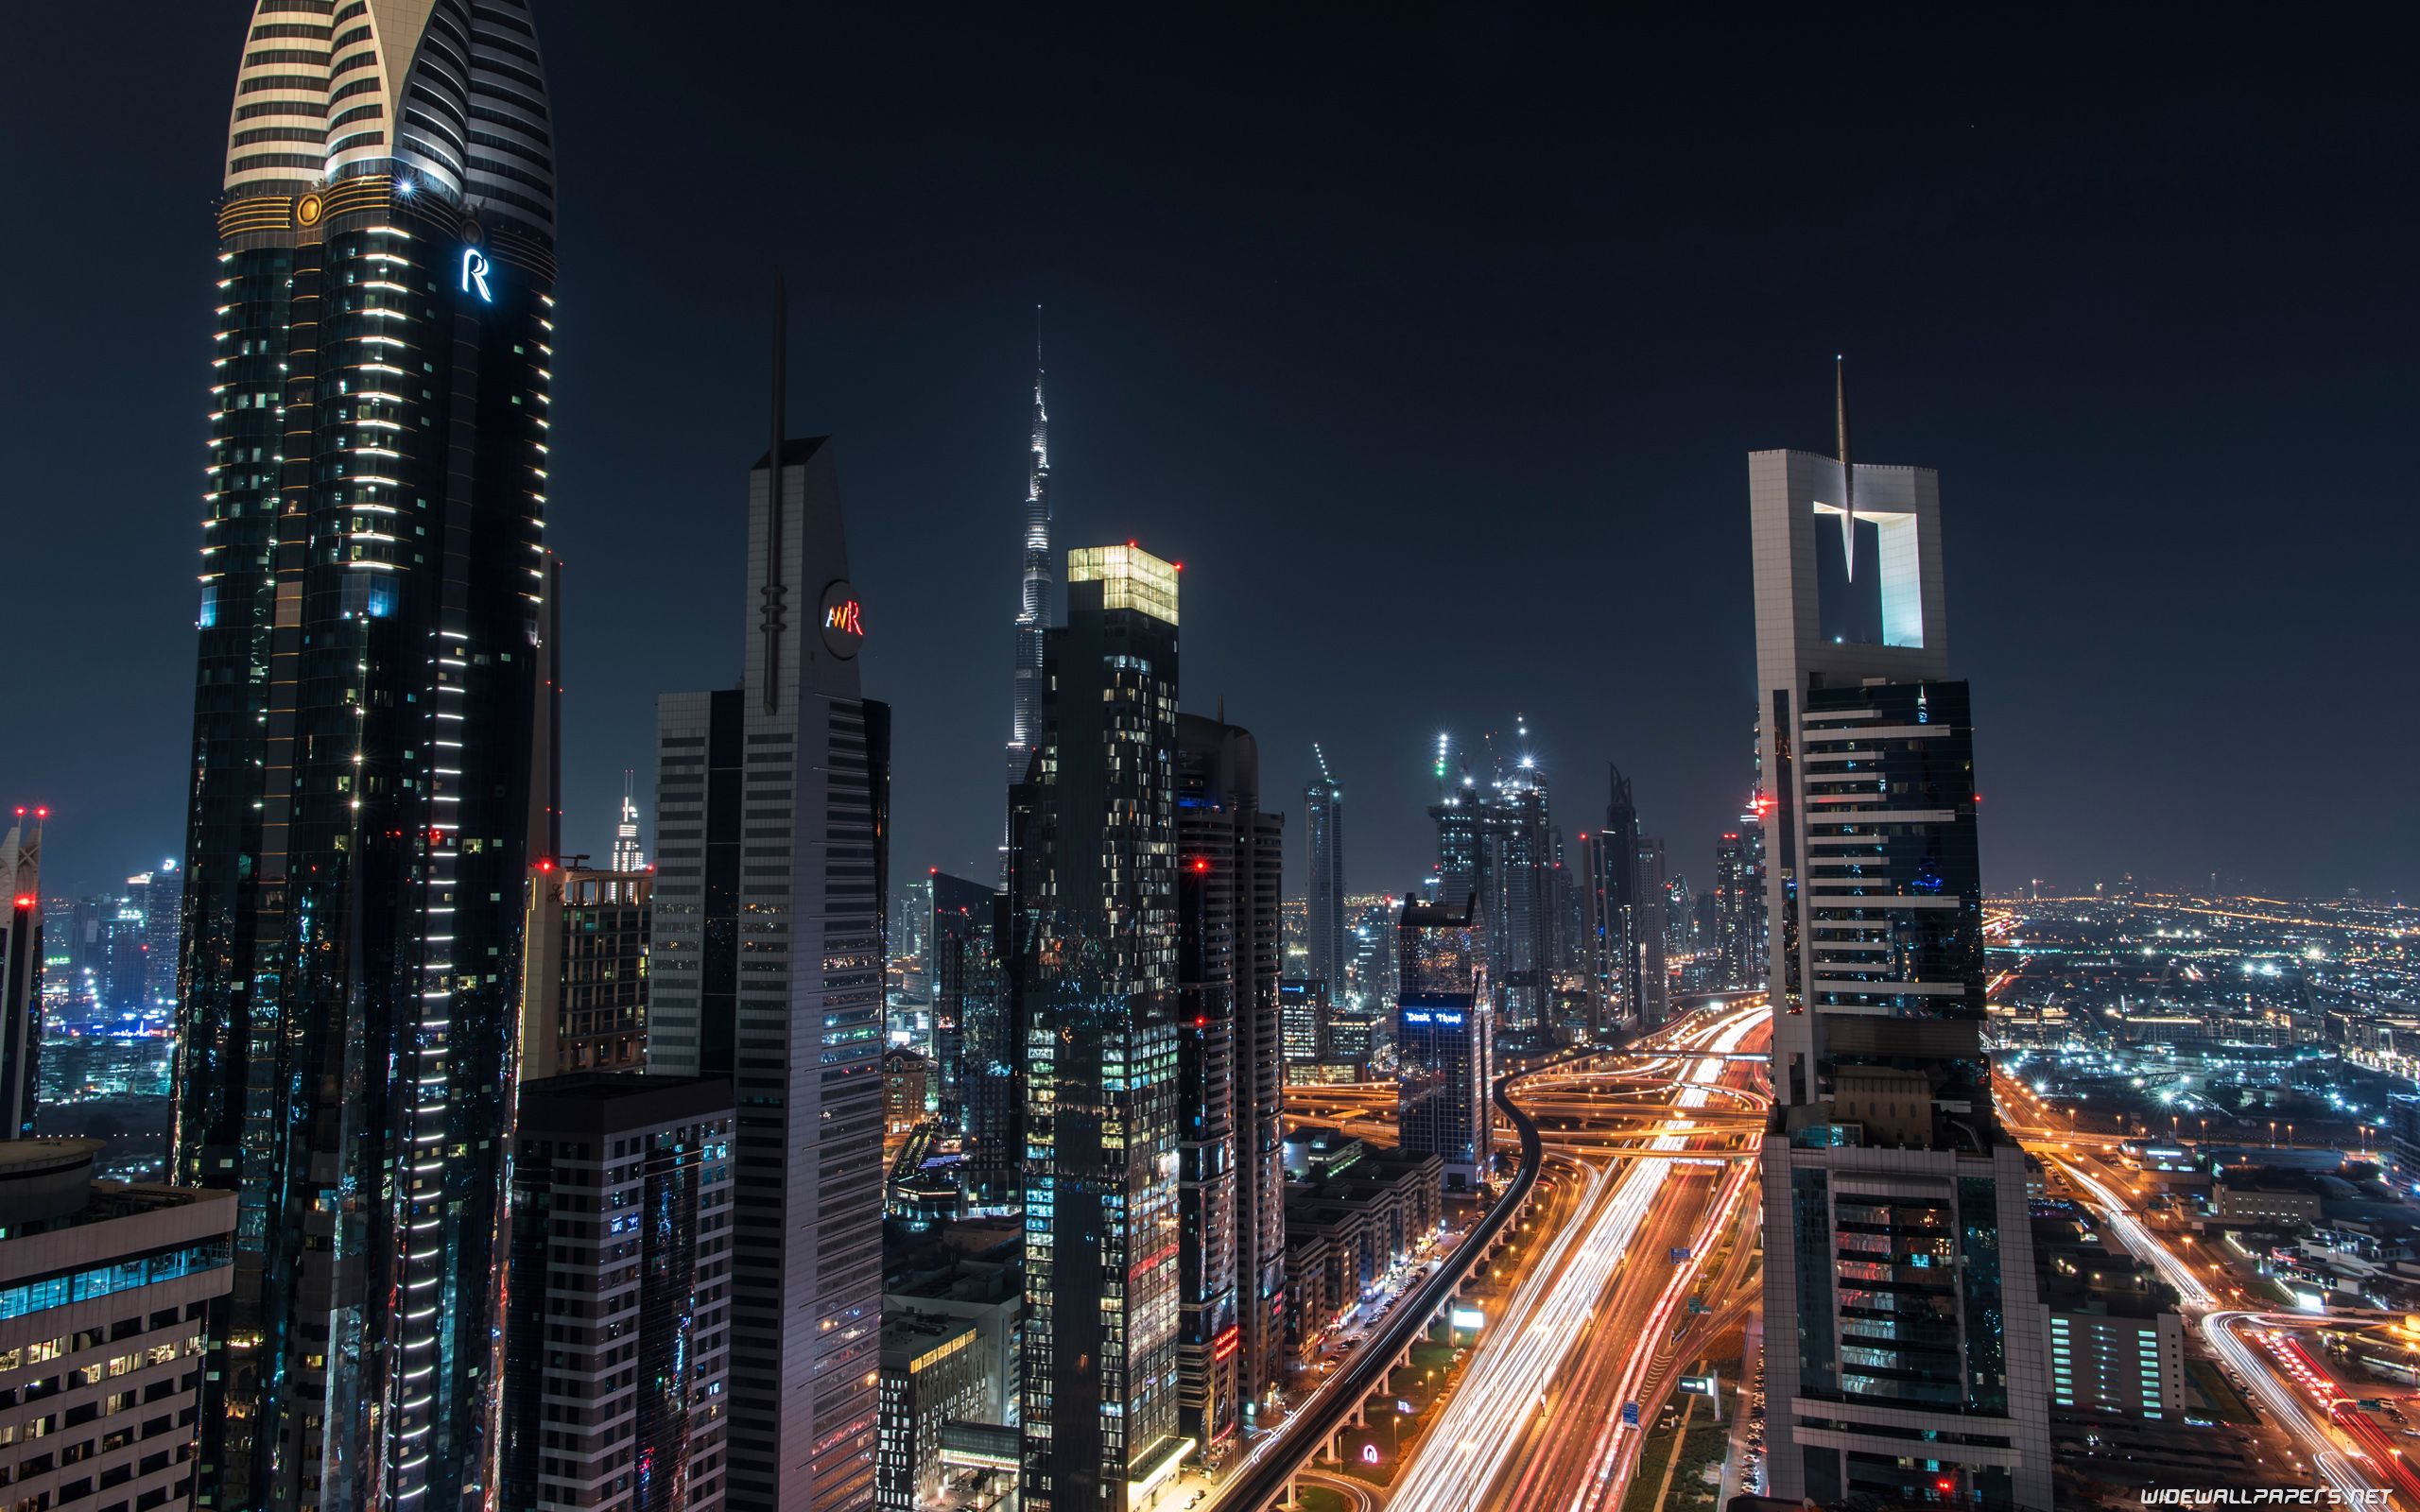 دورنمای شهر دبی در شب با برج های سر به فلک کشیده